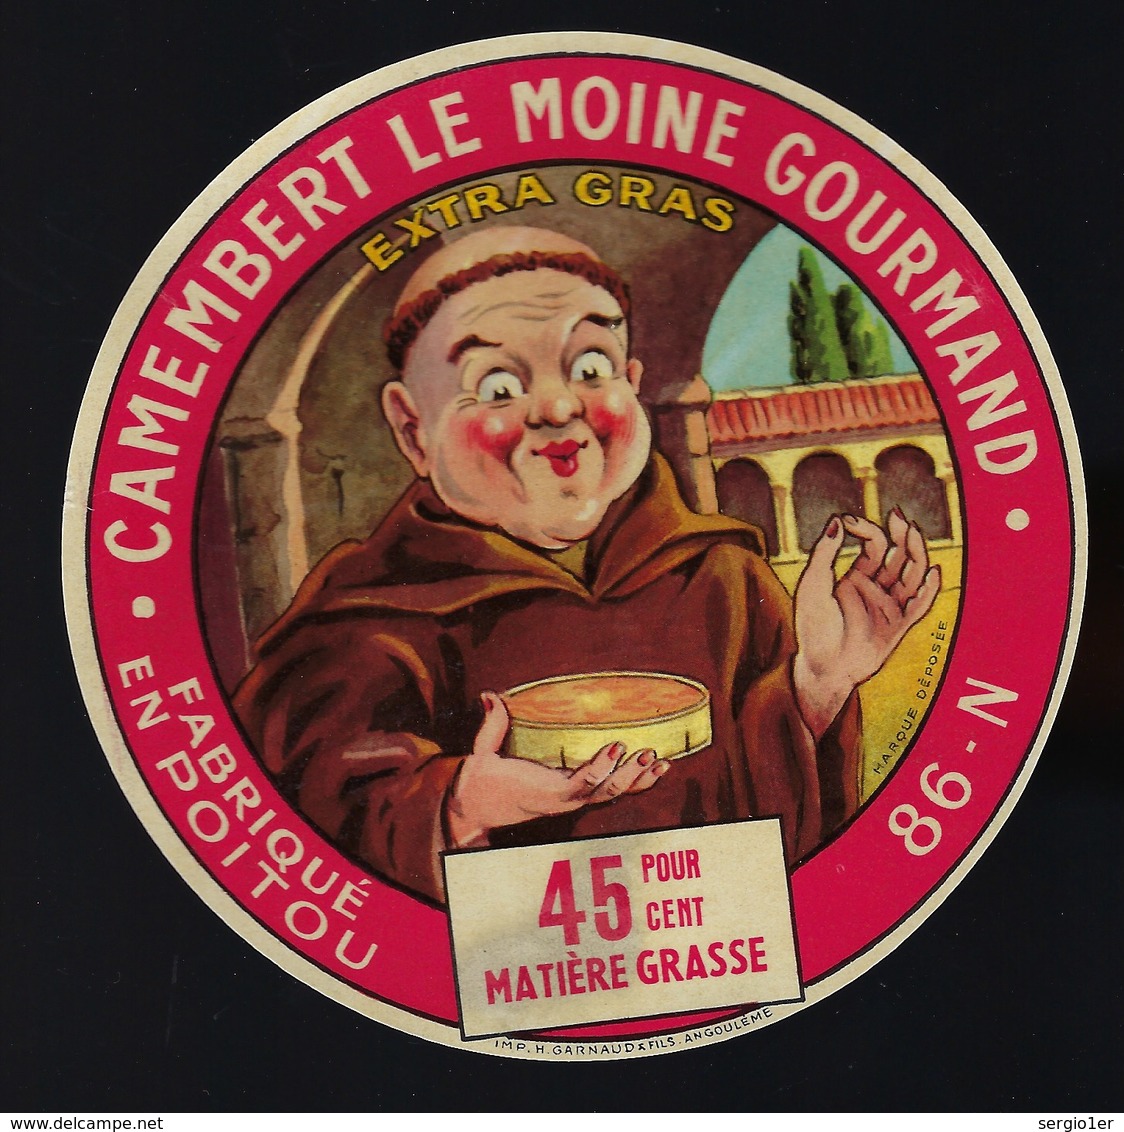 Fromage - etiquette fromage camembert le moine gourmand 45%mg fabriqué en  poitou 86-N